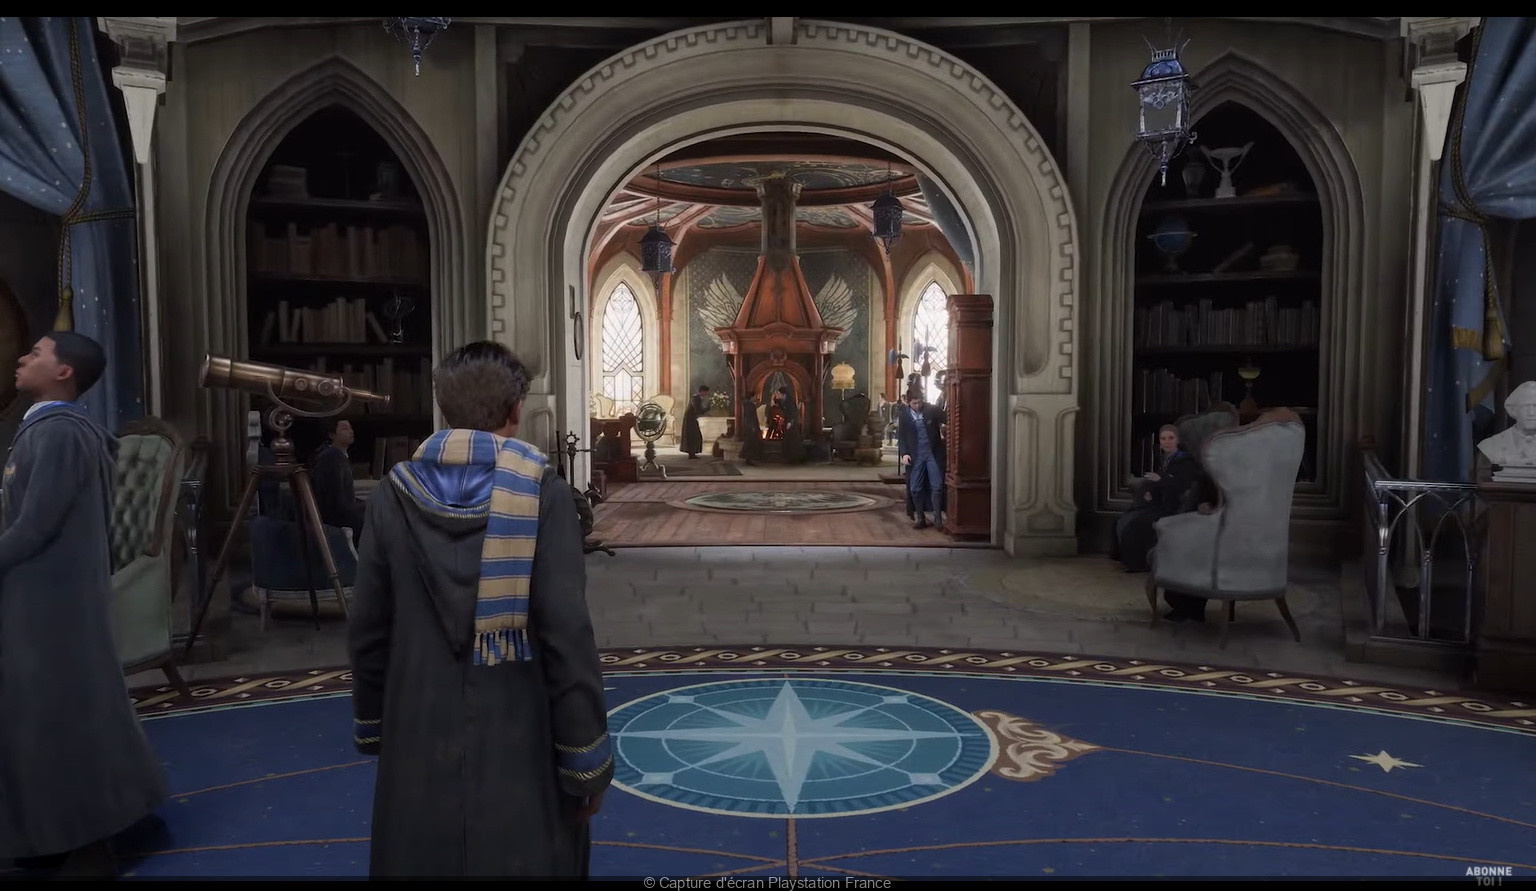 Hogwarts Legacy : le jeu vidéo le plus magique de l'année